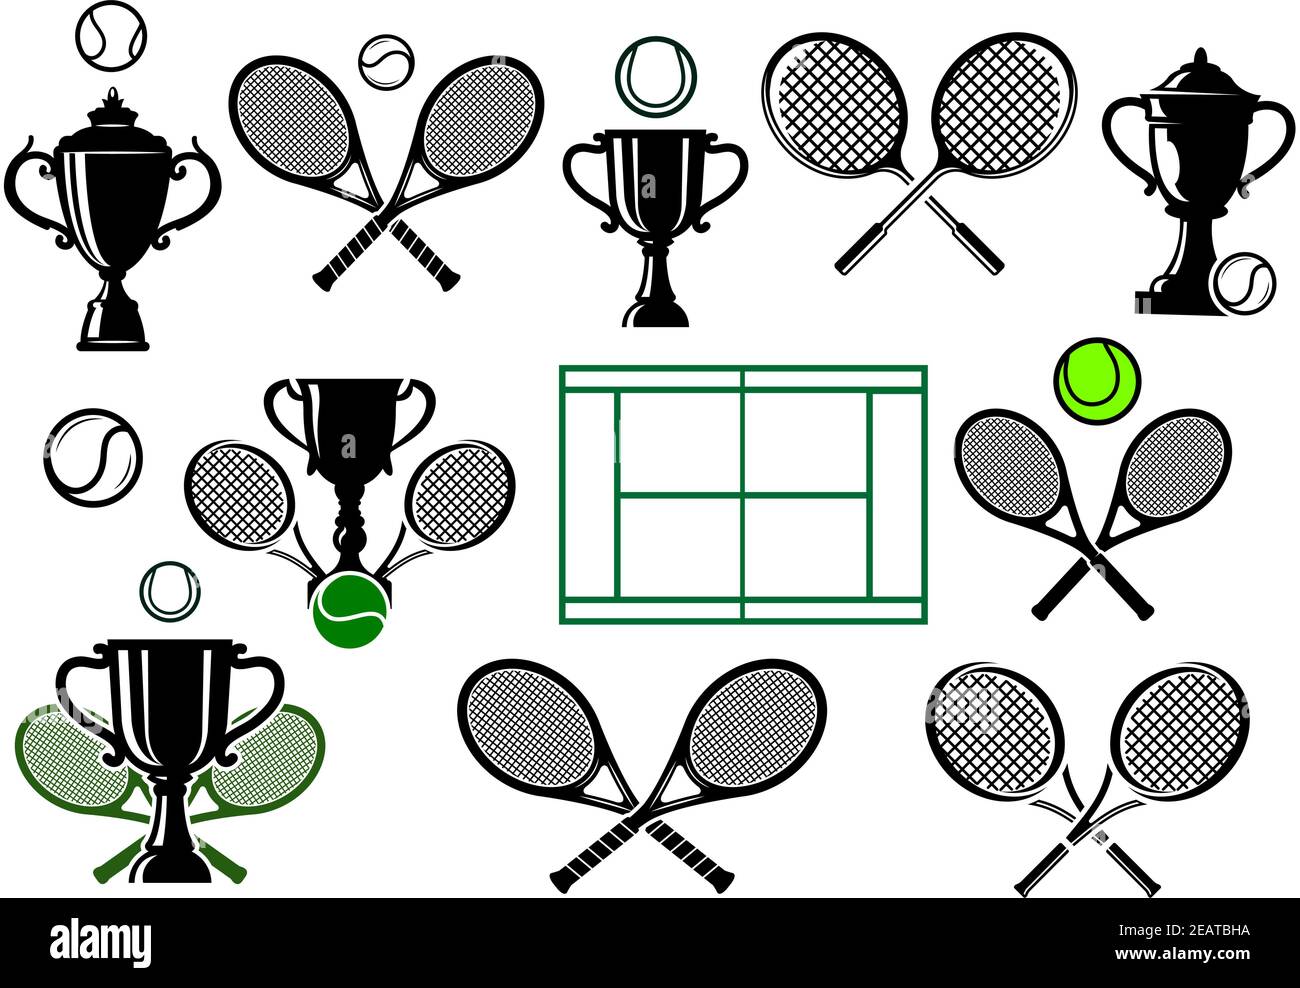 Elementi di design per logo tennis o emblema con racchette incrociate,  palline, coppe trofei, campo in colori nero e verde isolato su sfondo  bianco Immagine e Vettoriale - Alamy